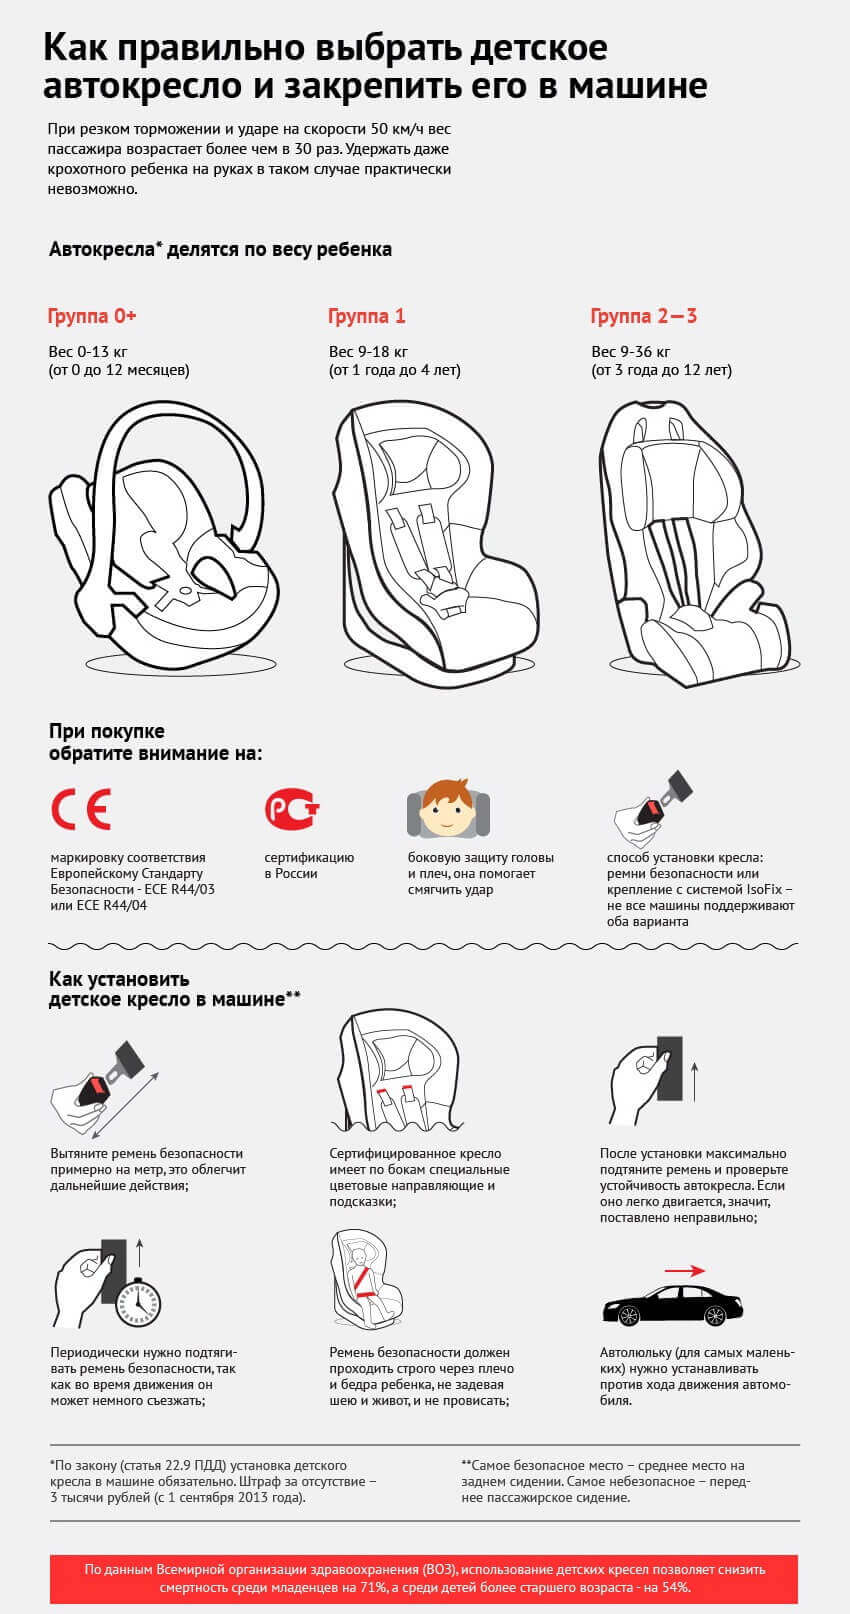 Как правильно выбрать детское автокресло и закрепить его в машине